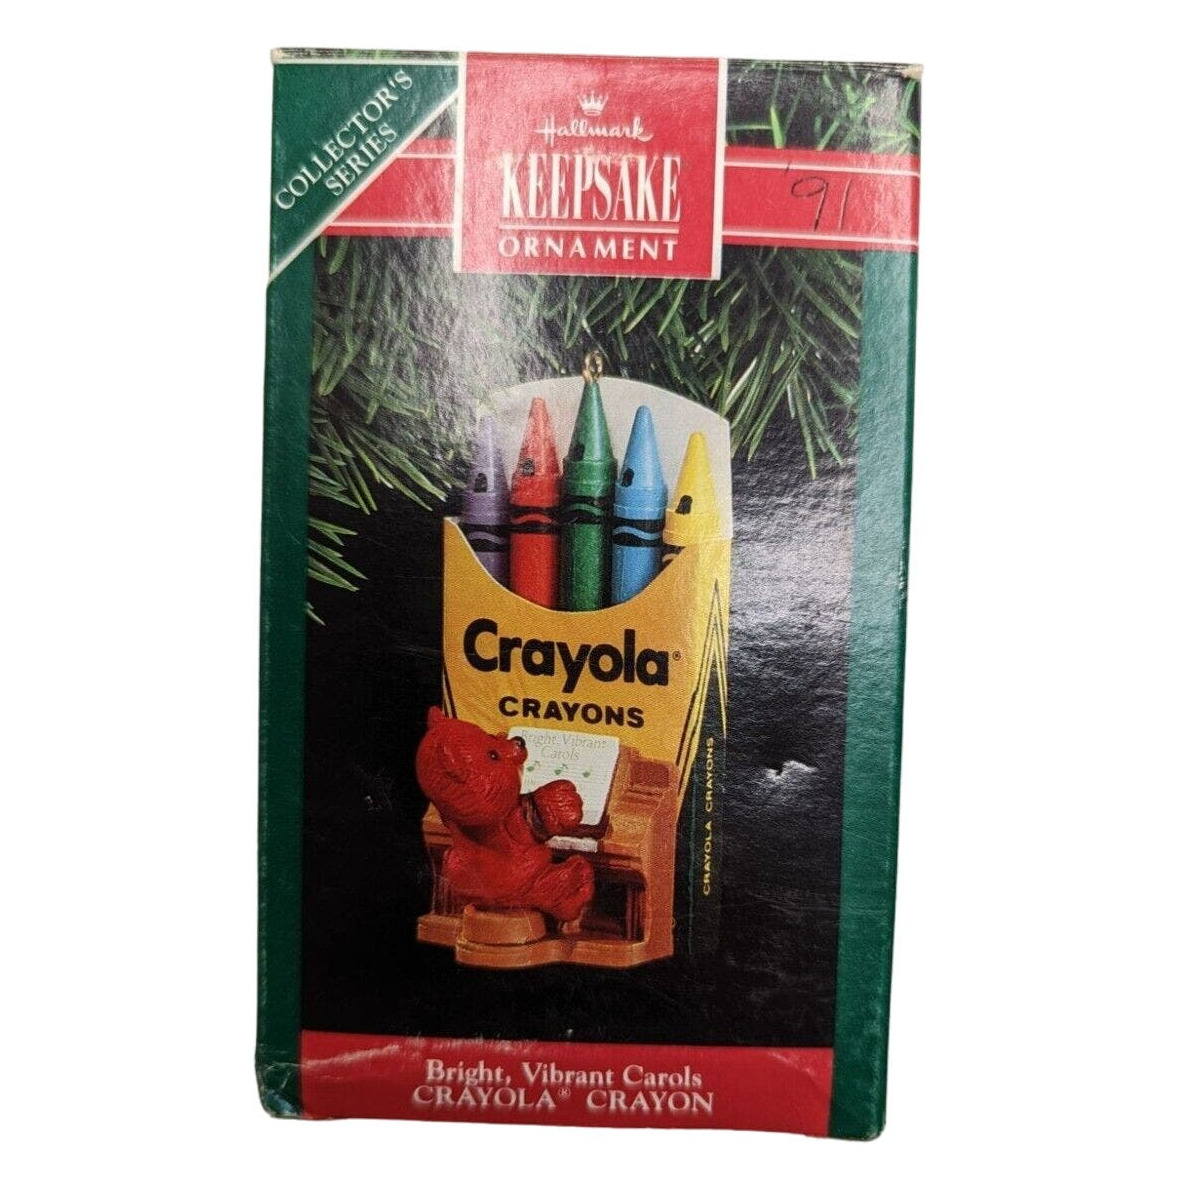 Vintage Hallmark Keepsake Christmas Ornament 1991 Crayola Crayon Piano